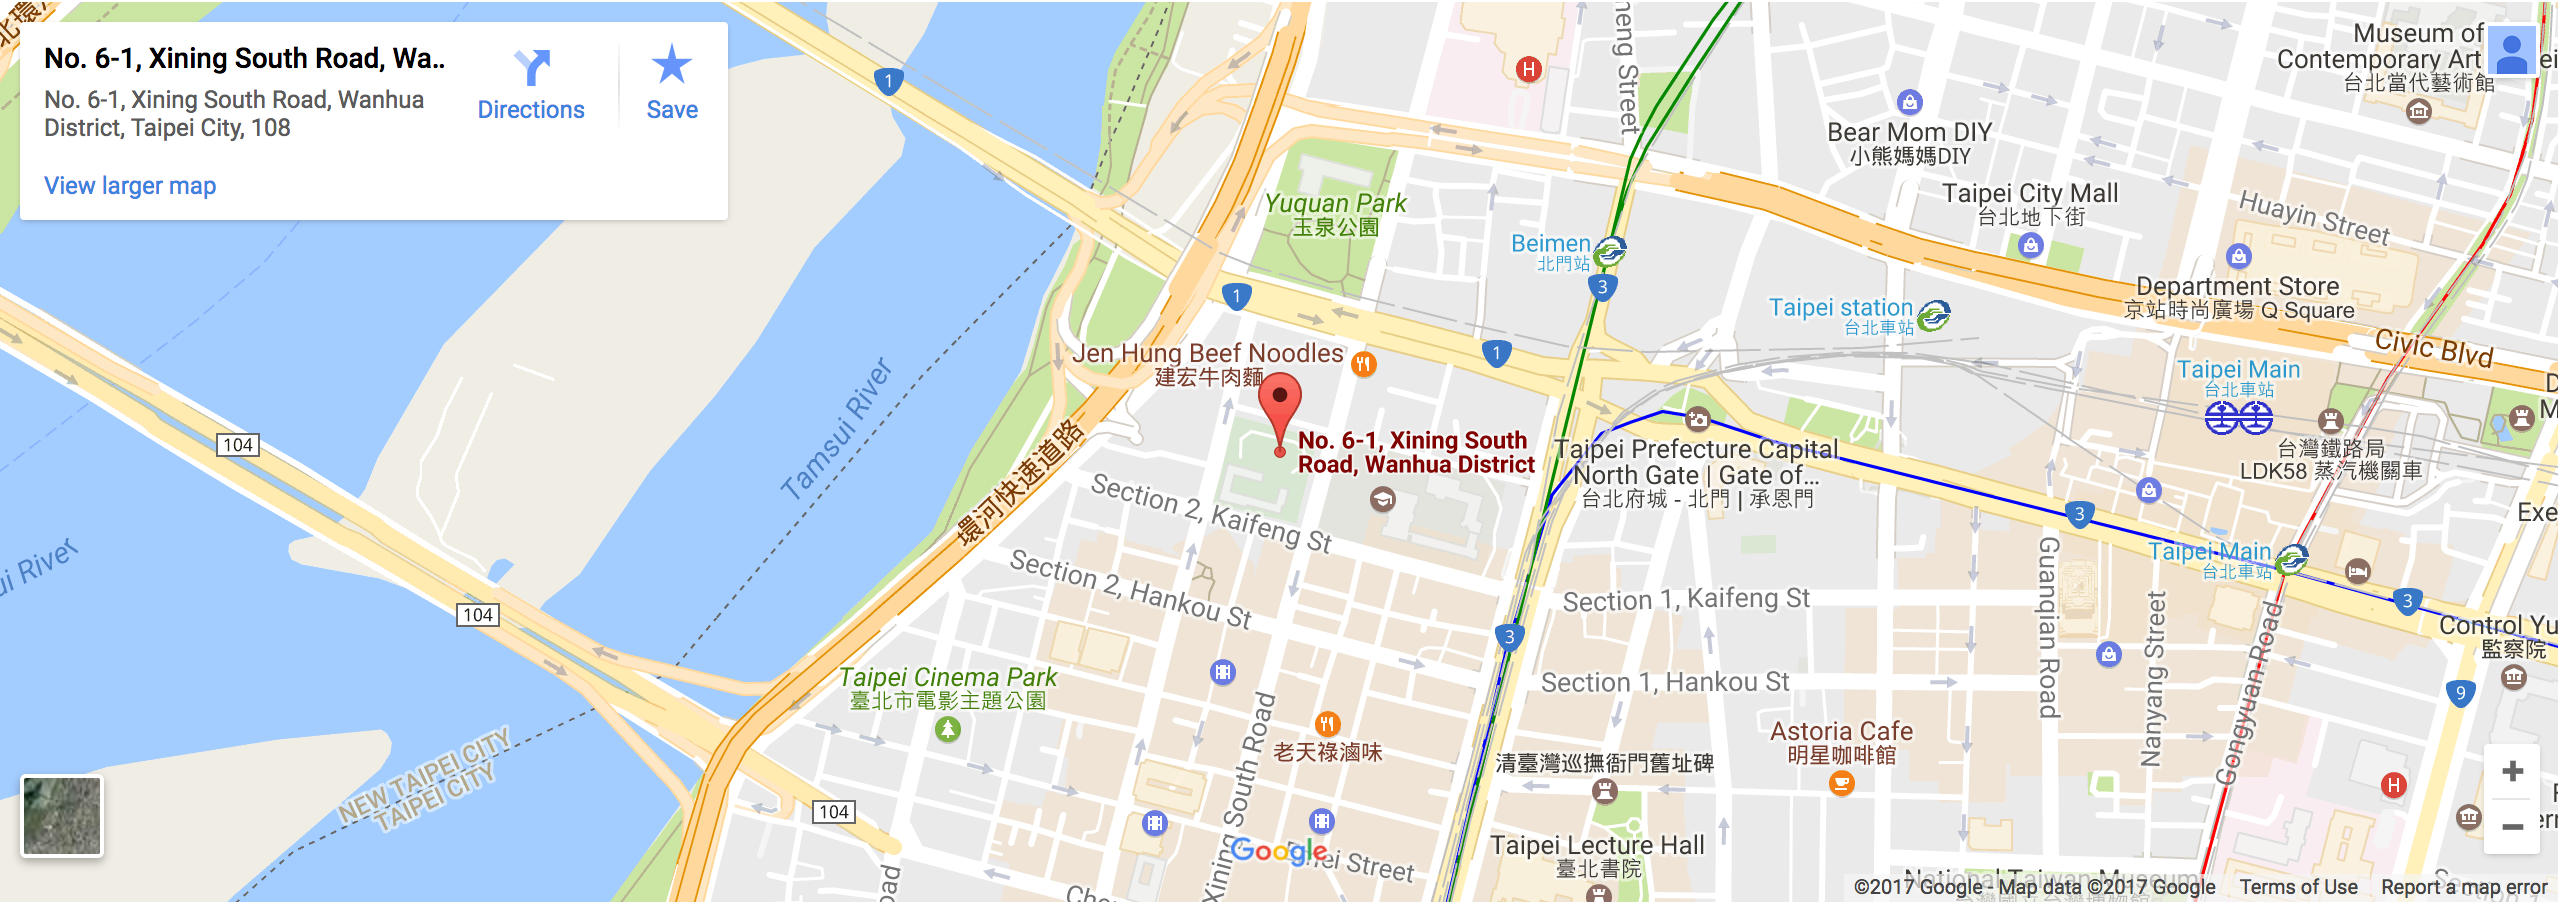 臺北市松山運動中心地圖